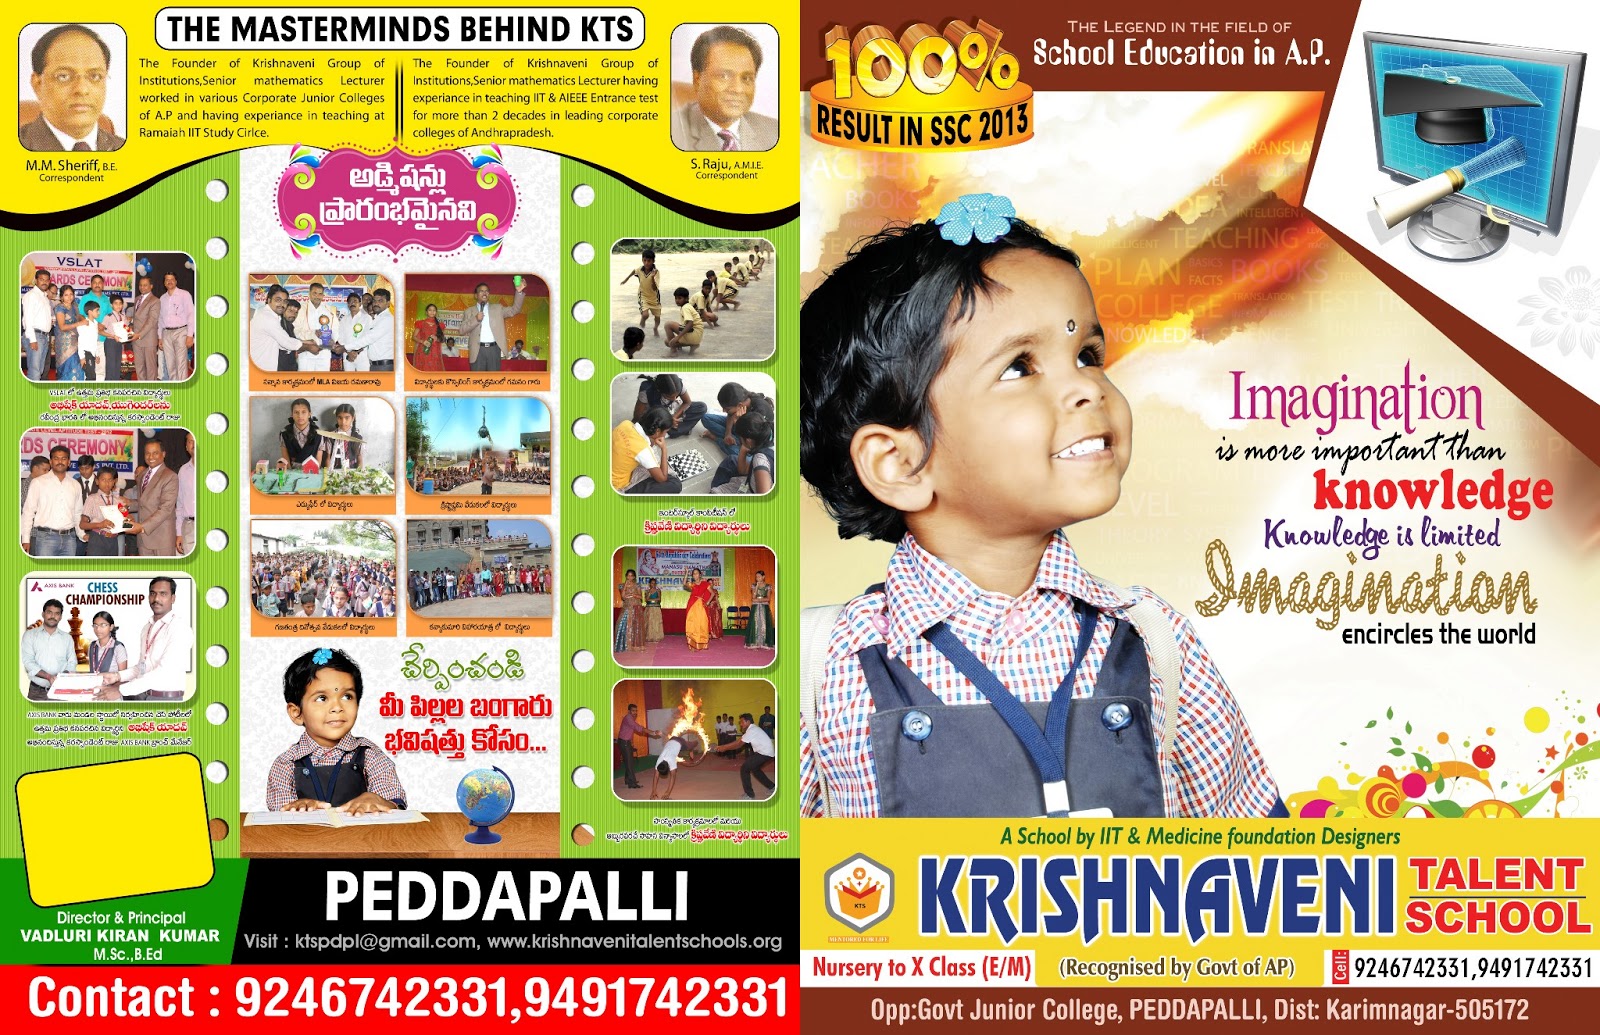 krishnaveni talent school custom brochure design template ... - 1600 x 1035 jpeg 568kB